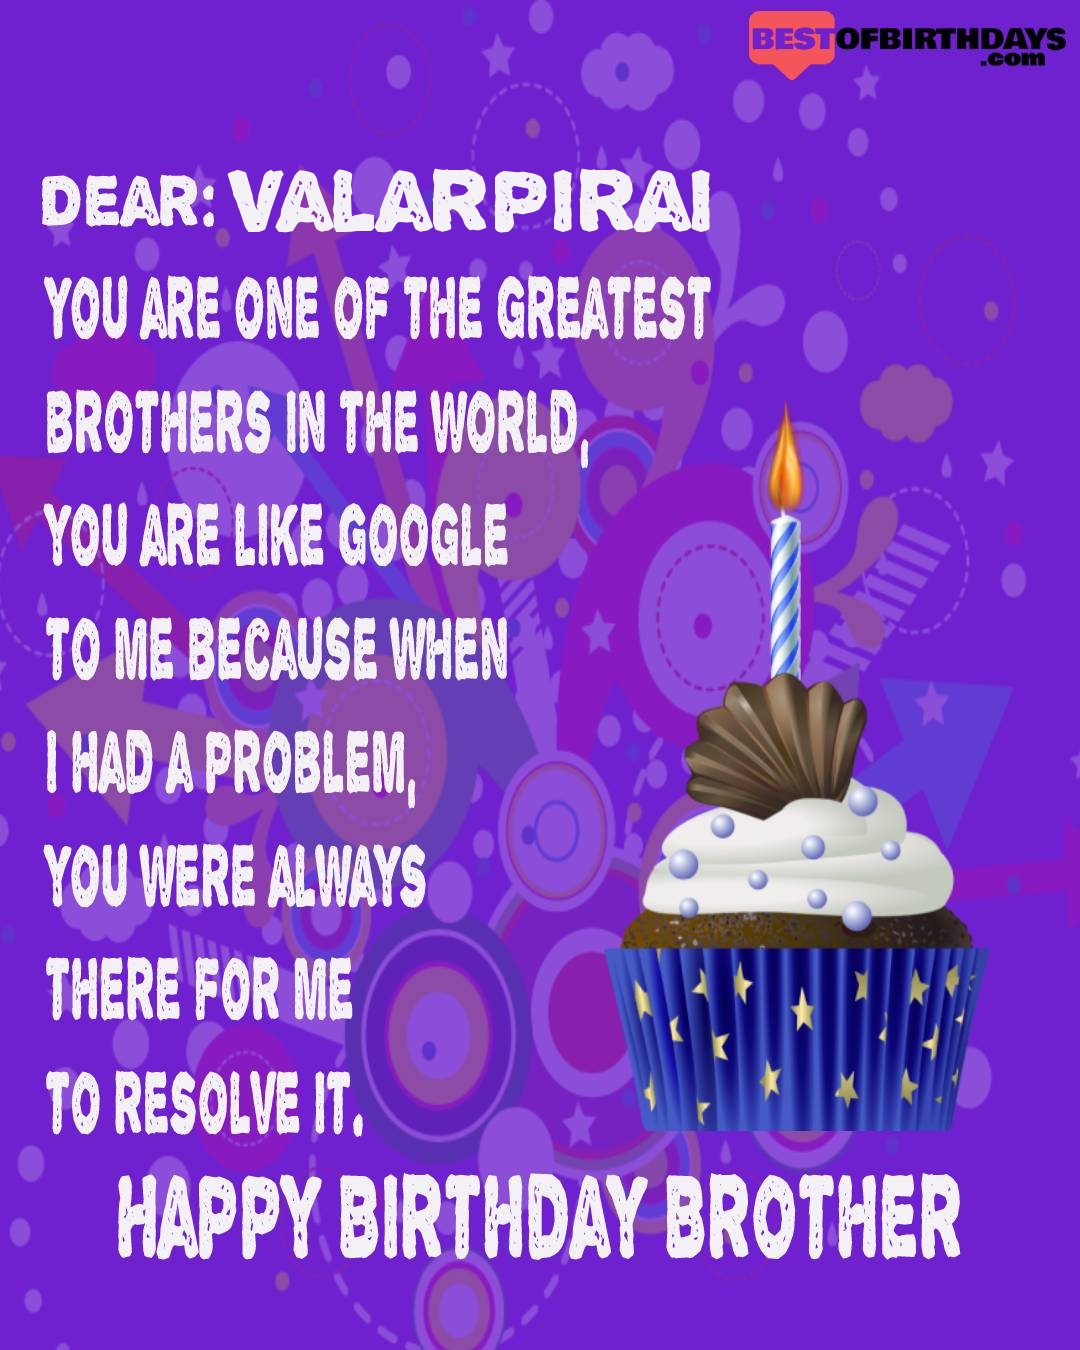 Happy birthday valarpirai bhai brother bro